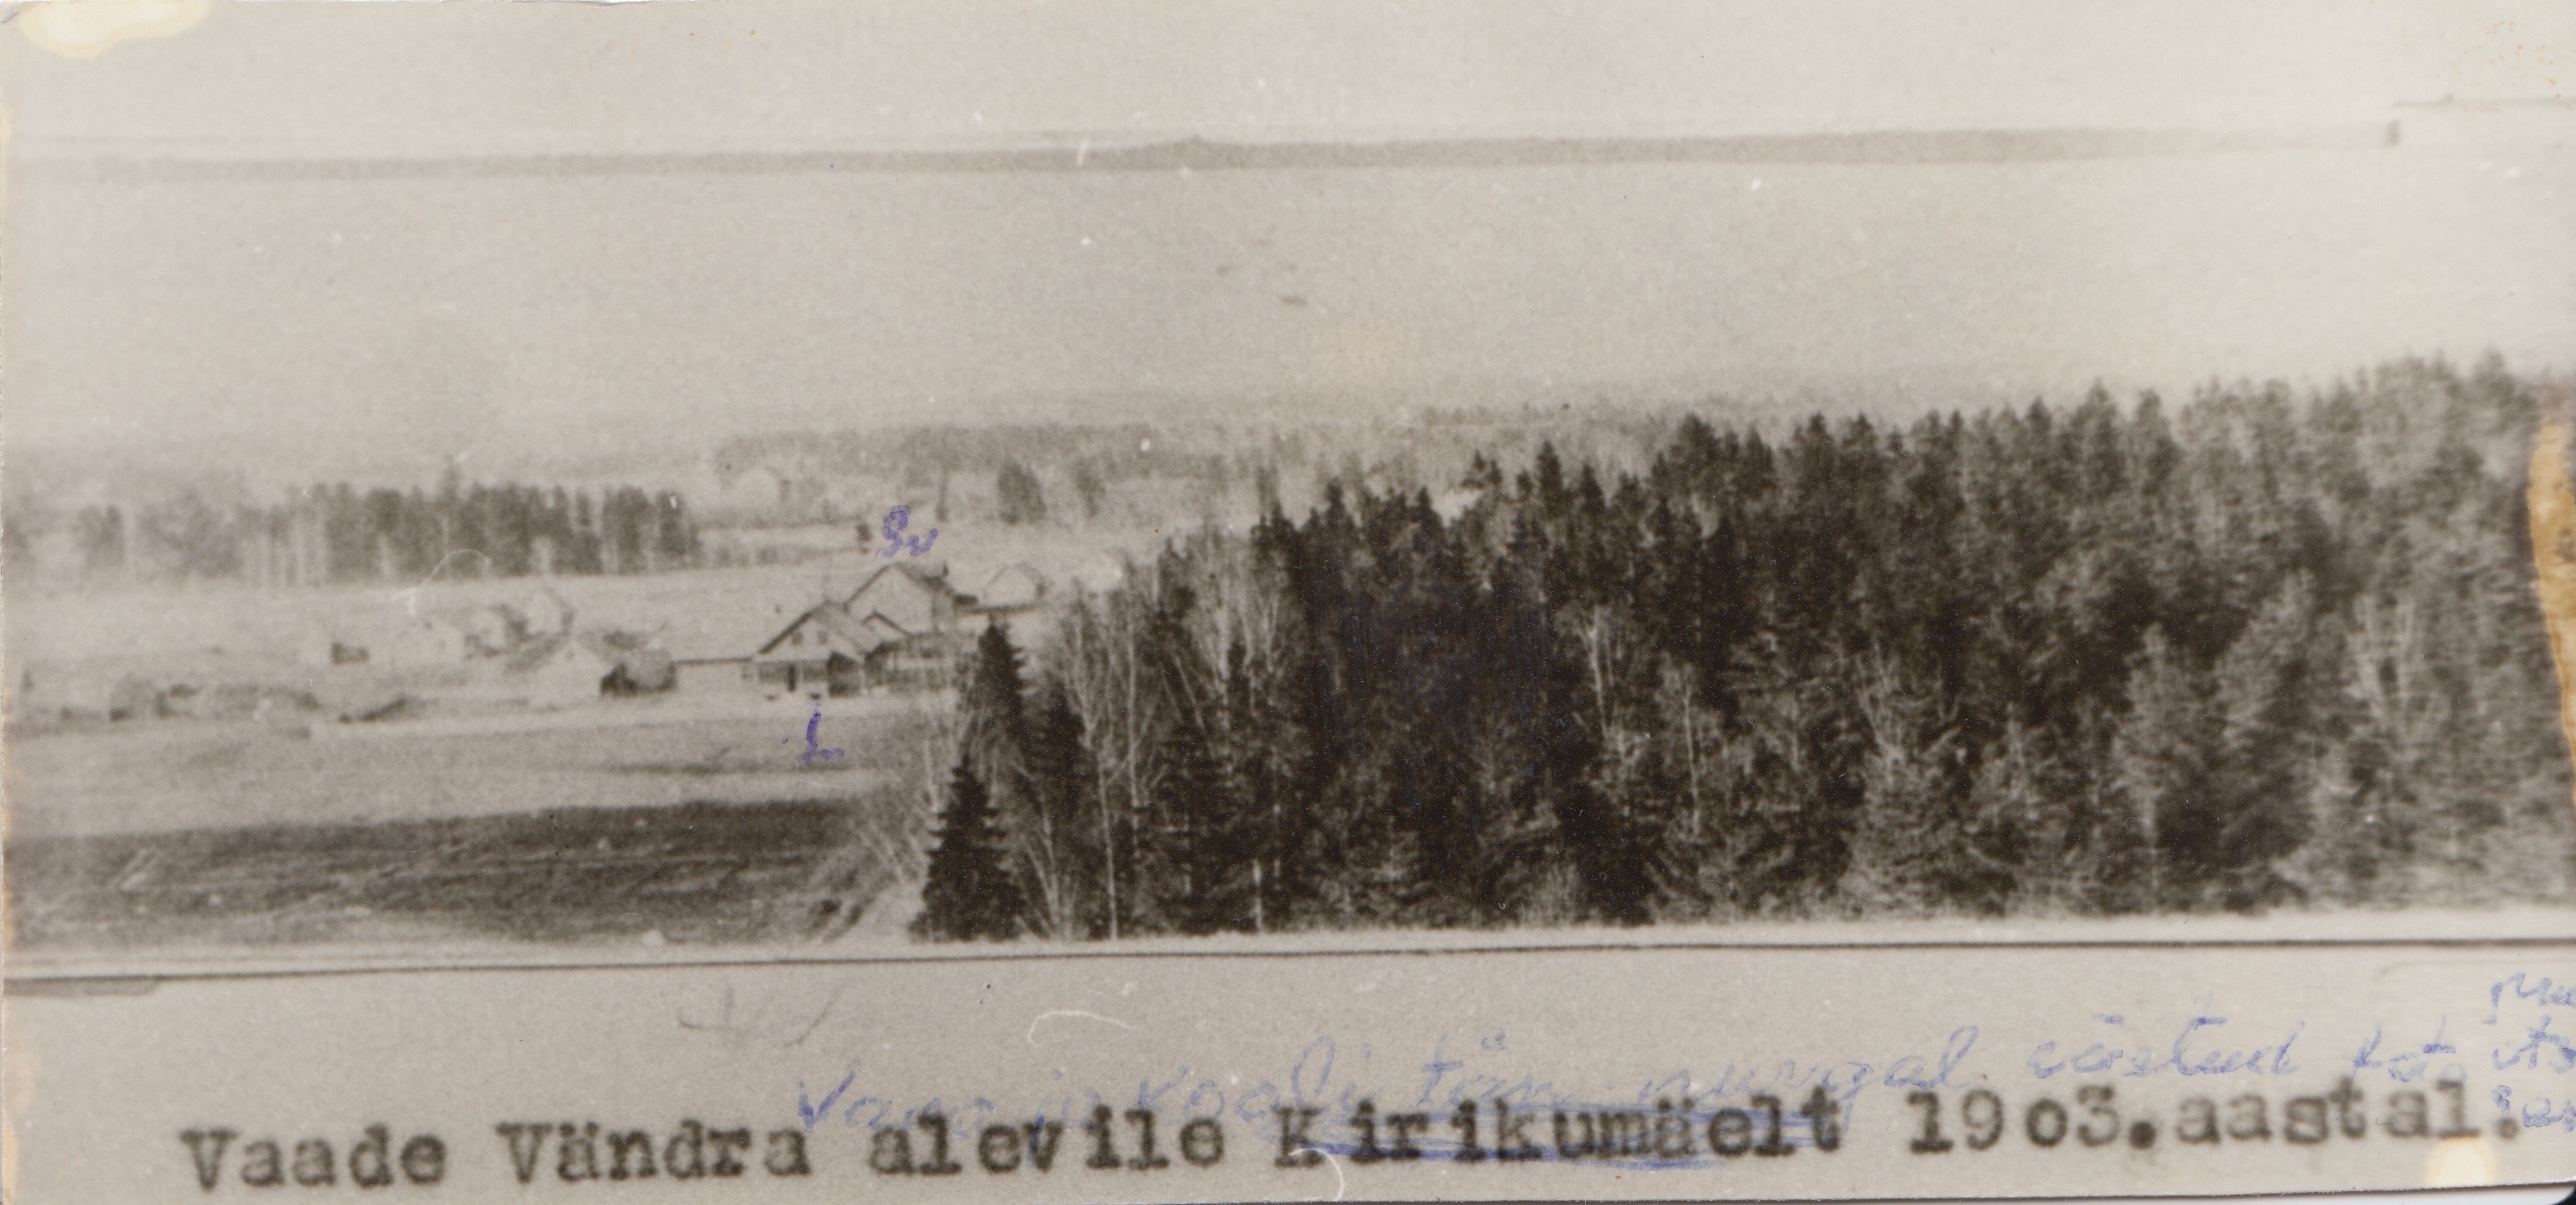 1903 views of Vändra alevi